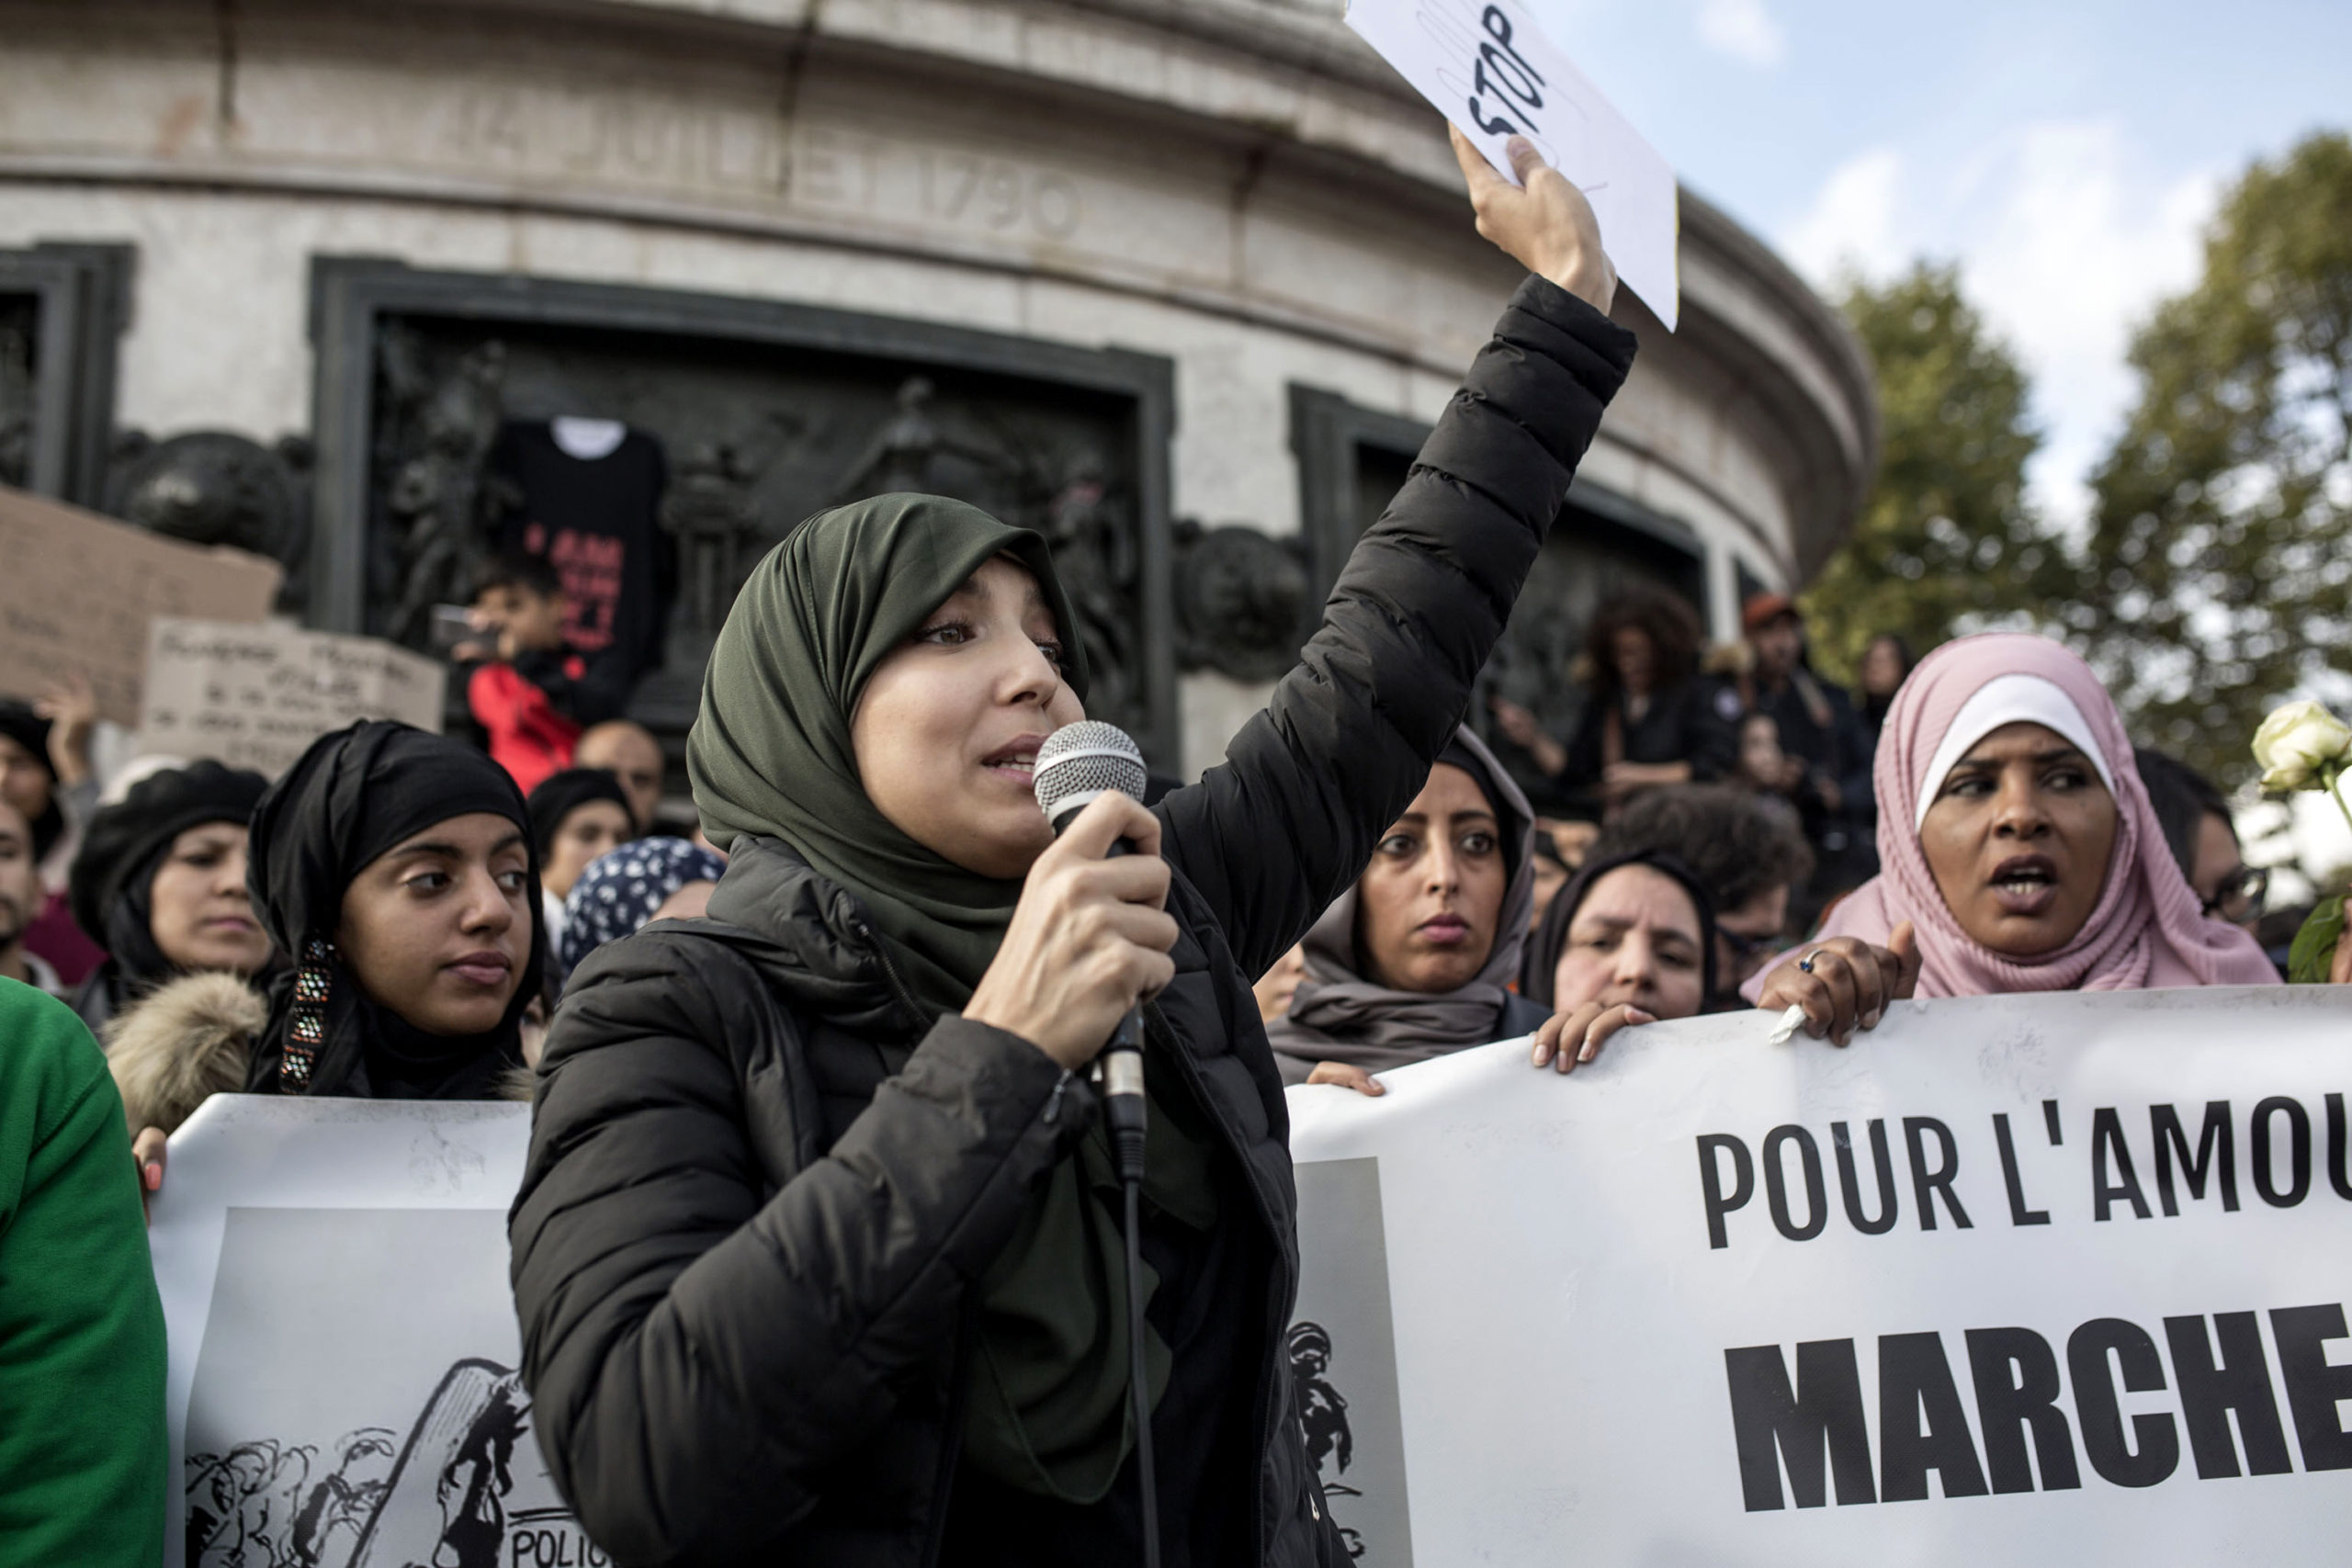 Εξτρεμιστές μουσουλμάνοι: «Το Ισλάμ είναι το μέλλον της Ευρώπης – Θα καταλάβουμε όλες τις πρωτεύουσες»